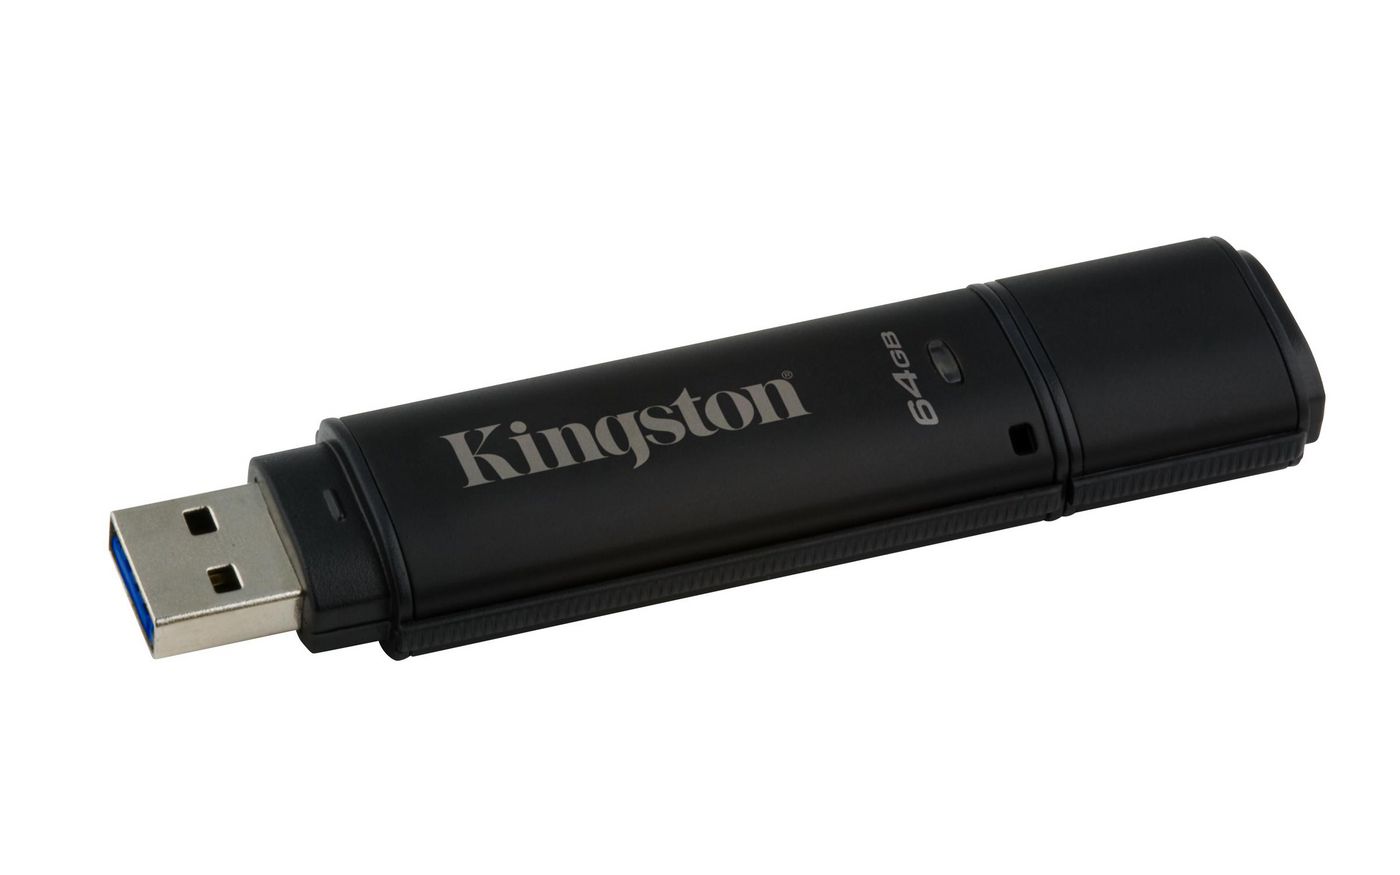 KINGSTON 64GB USB 3.0 DT4000 G2 256 AES FIPS 140-